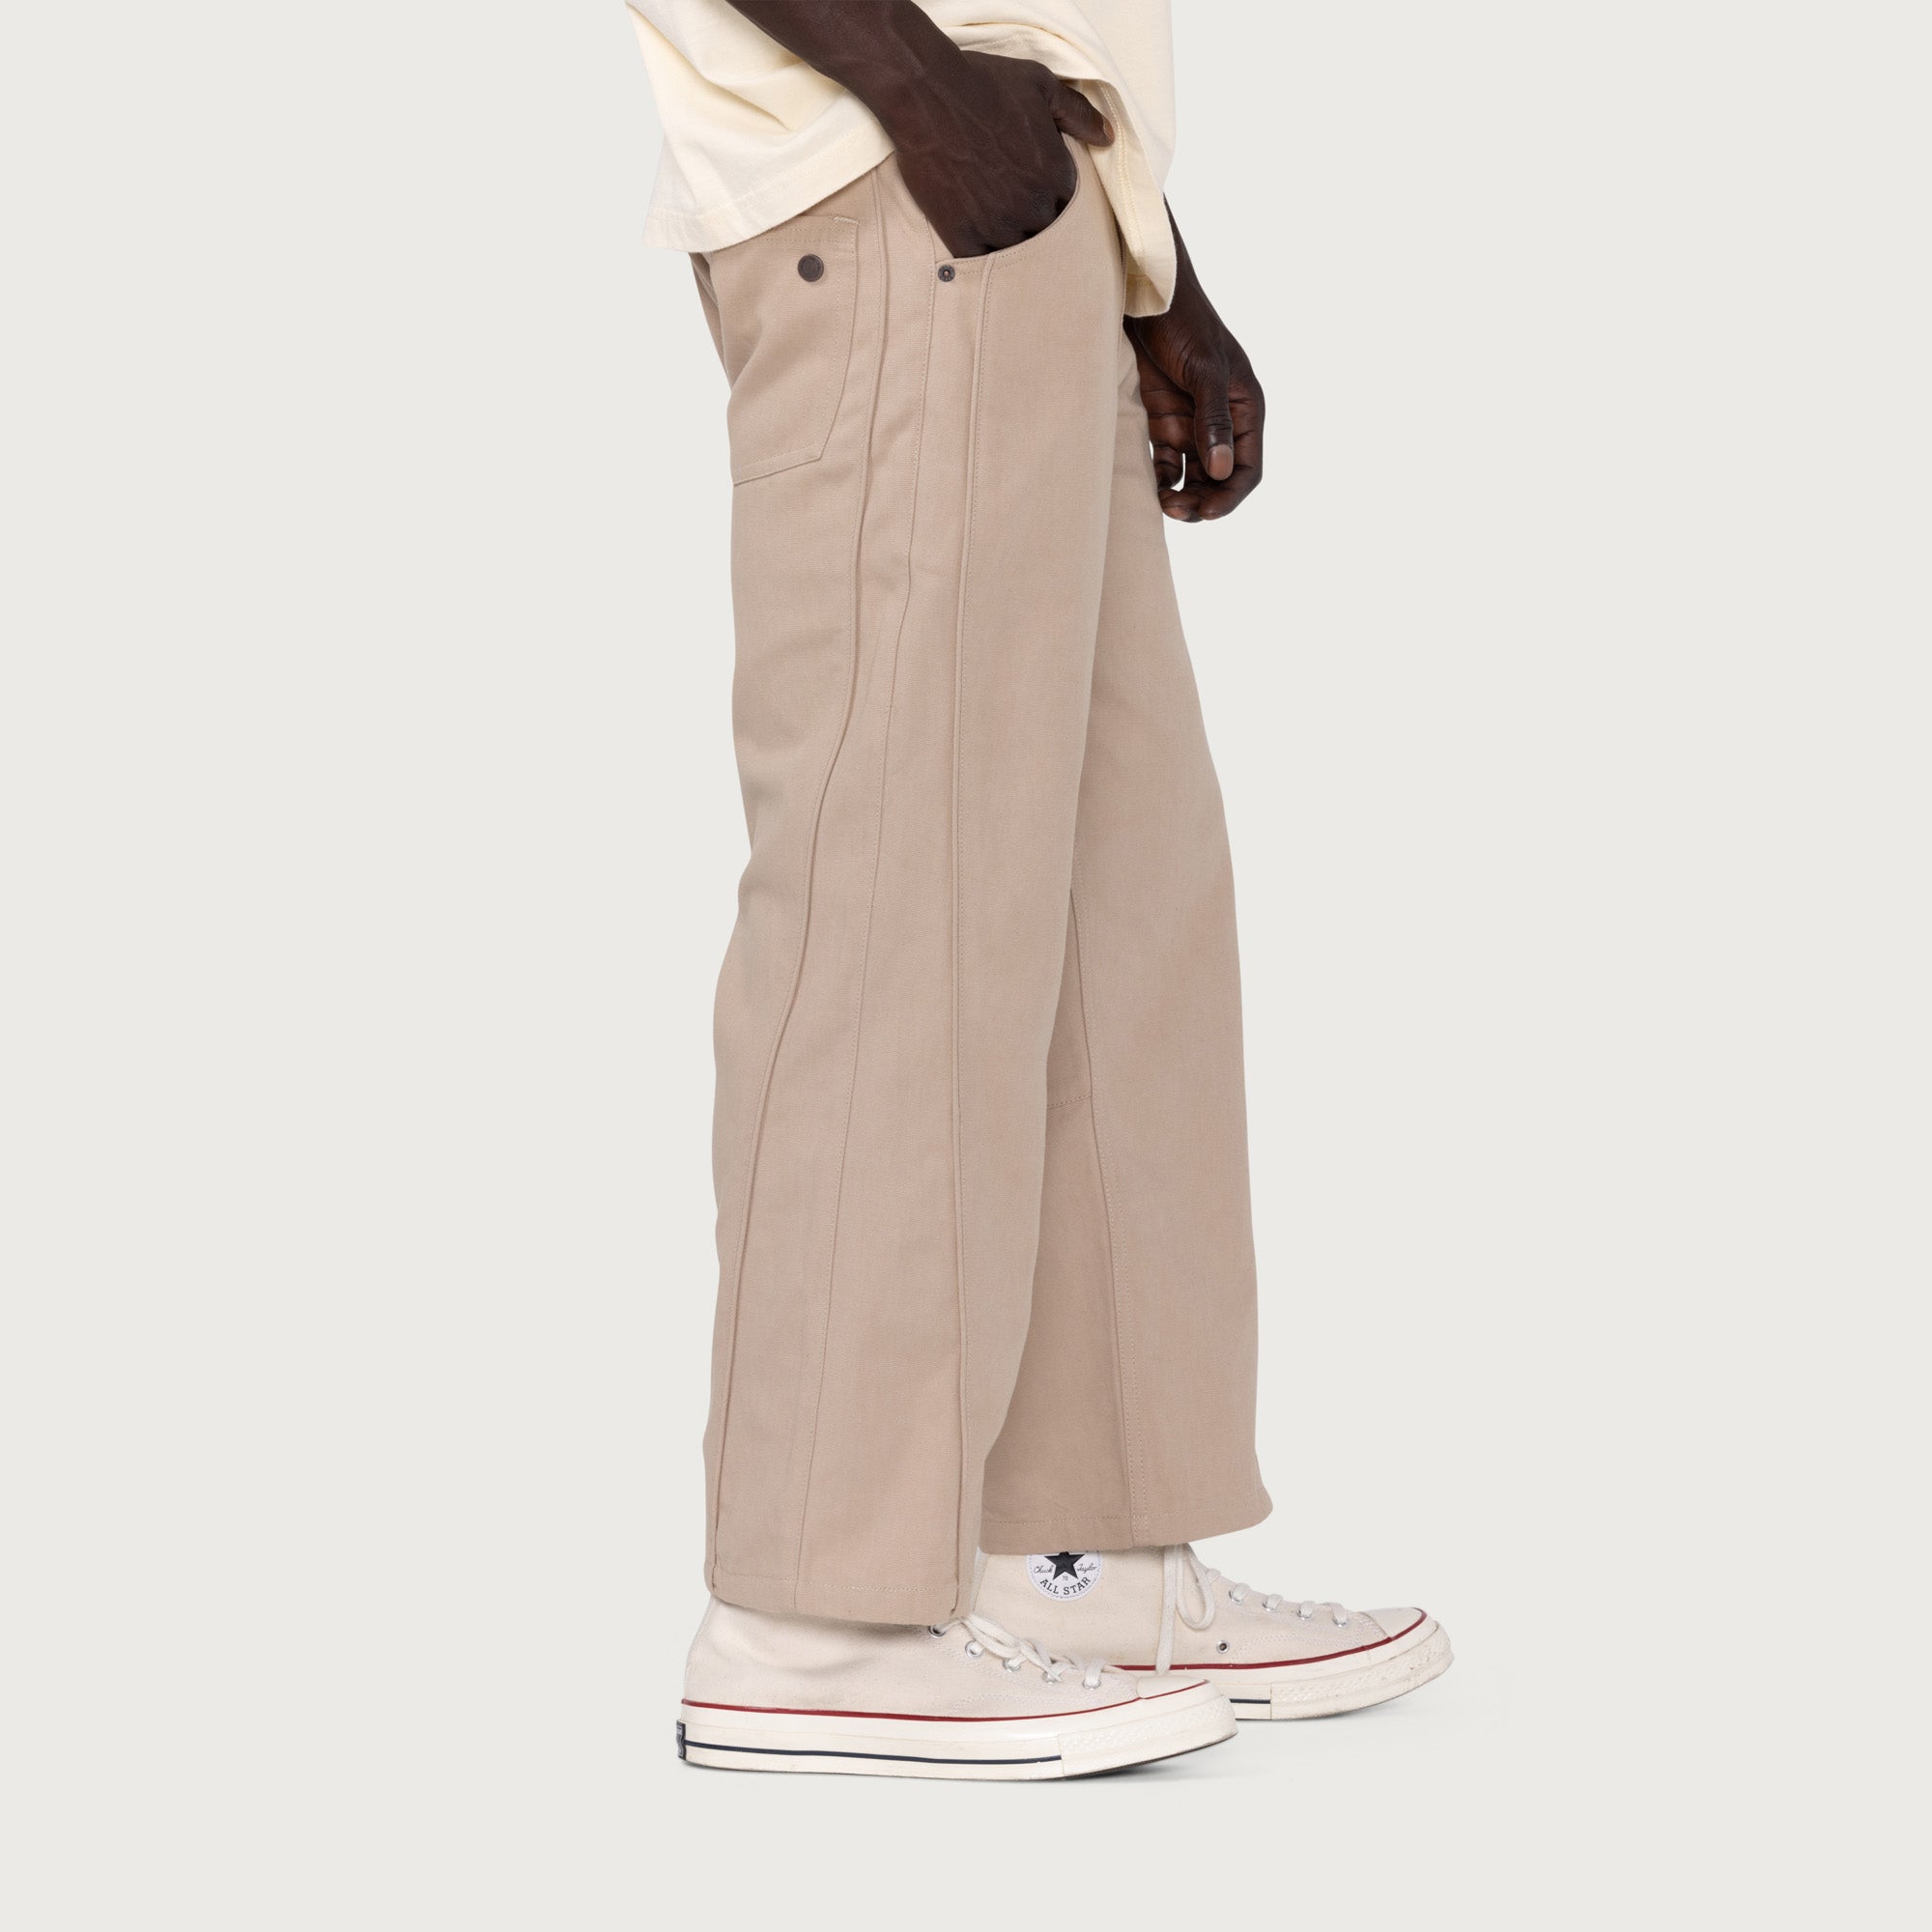 大量入荷中 ACLENT Piping color slacks pants | rpagrimensura.com.ar